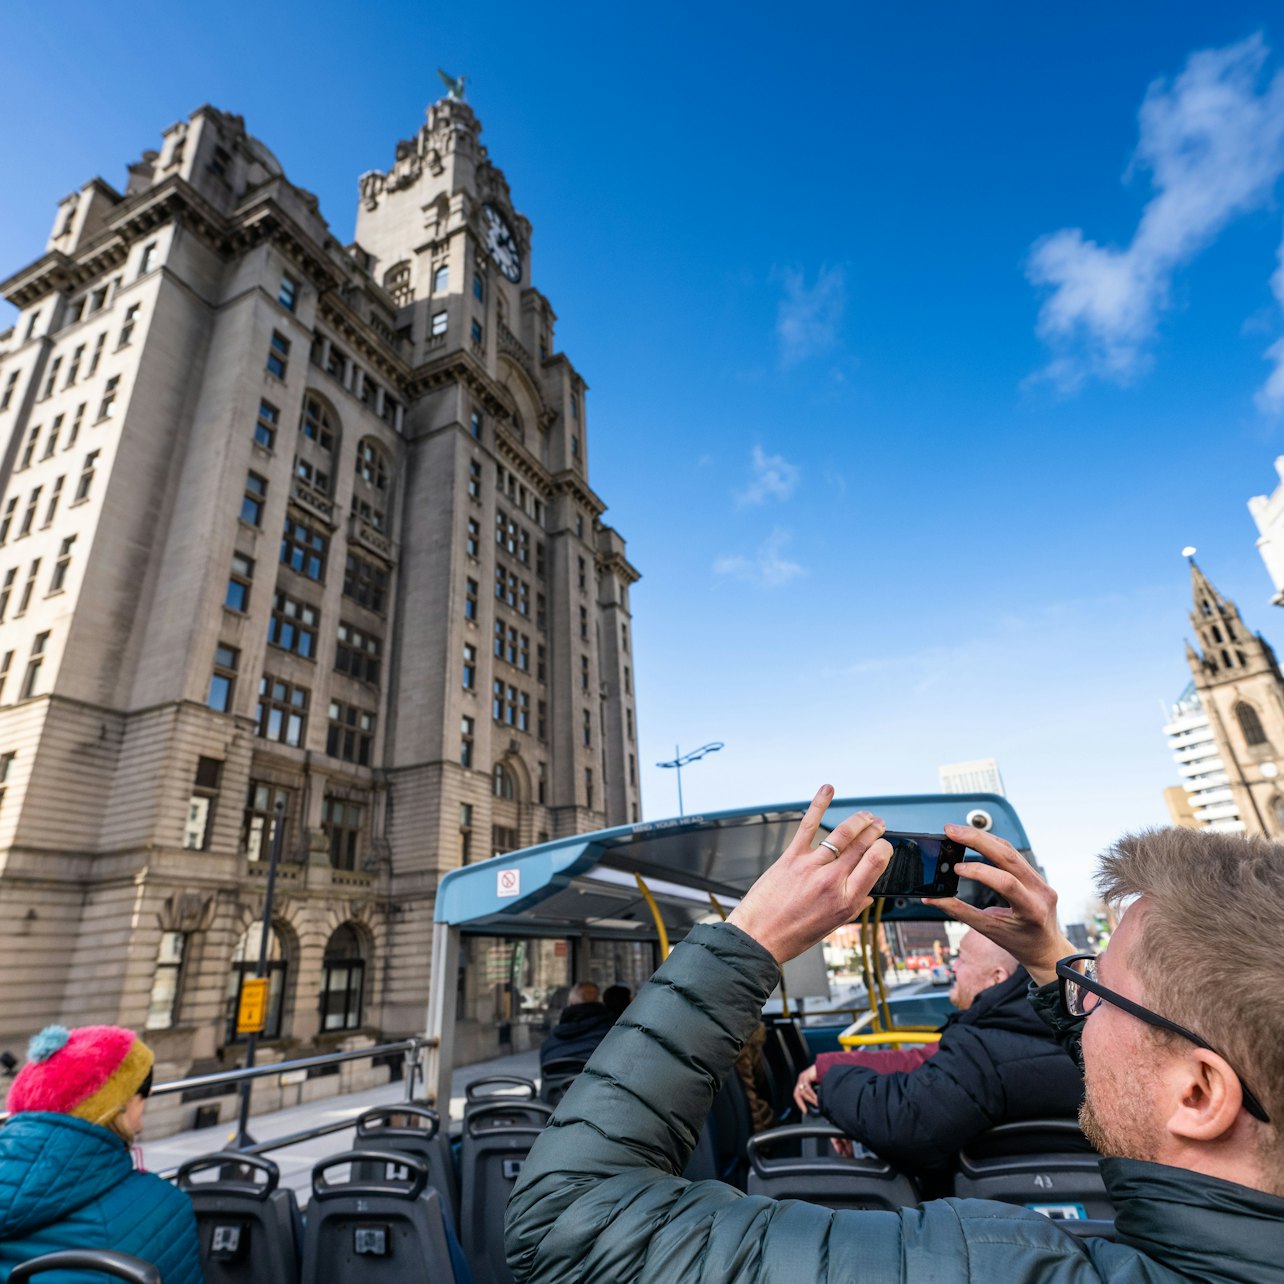 Liverpool River Cruise & Sightseeing Bus Tour - Acomodações em Liverpool